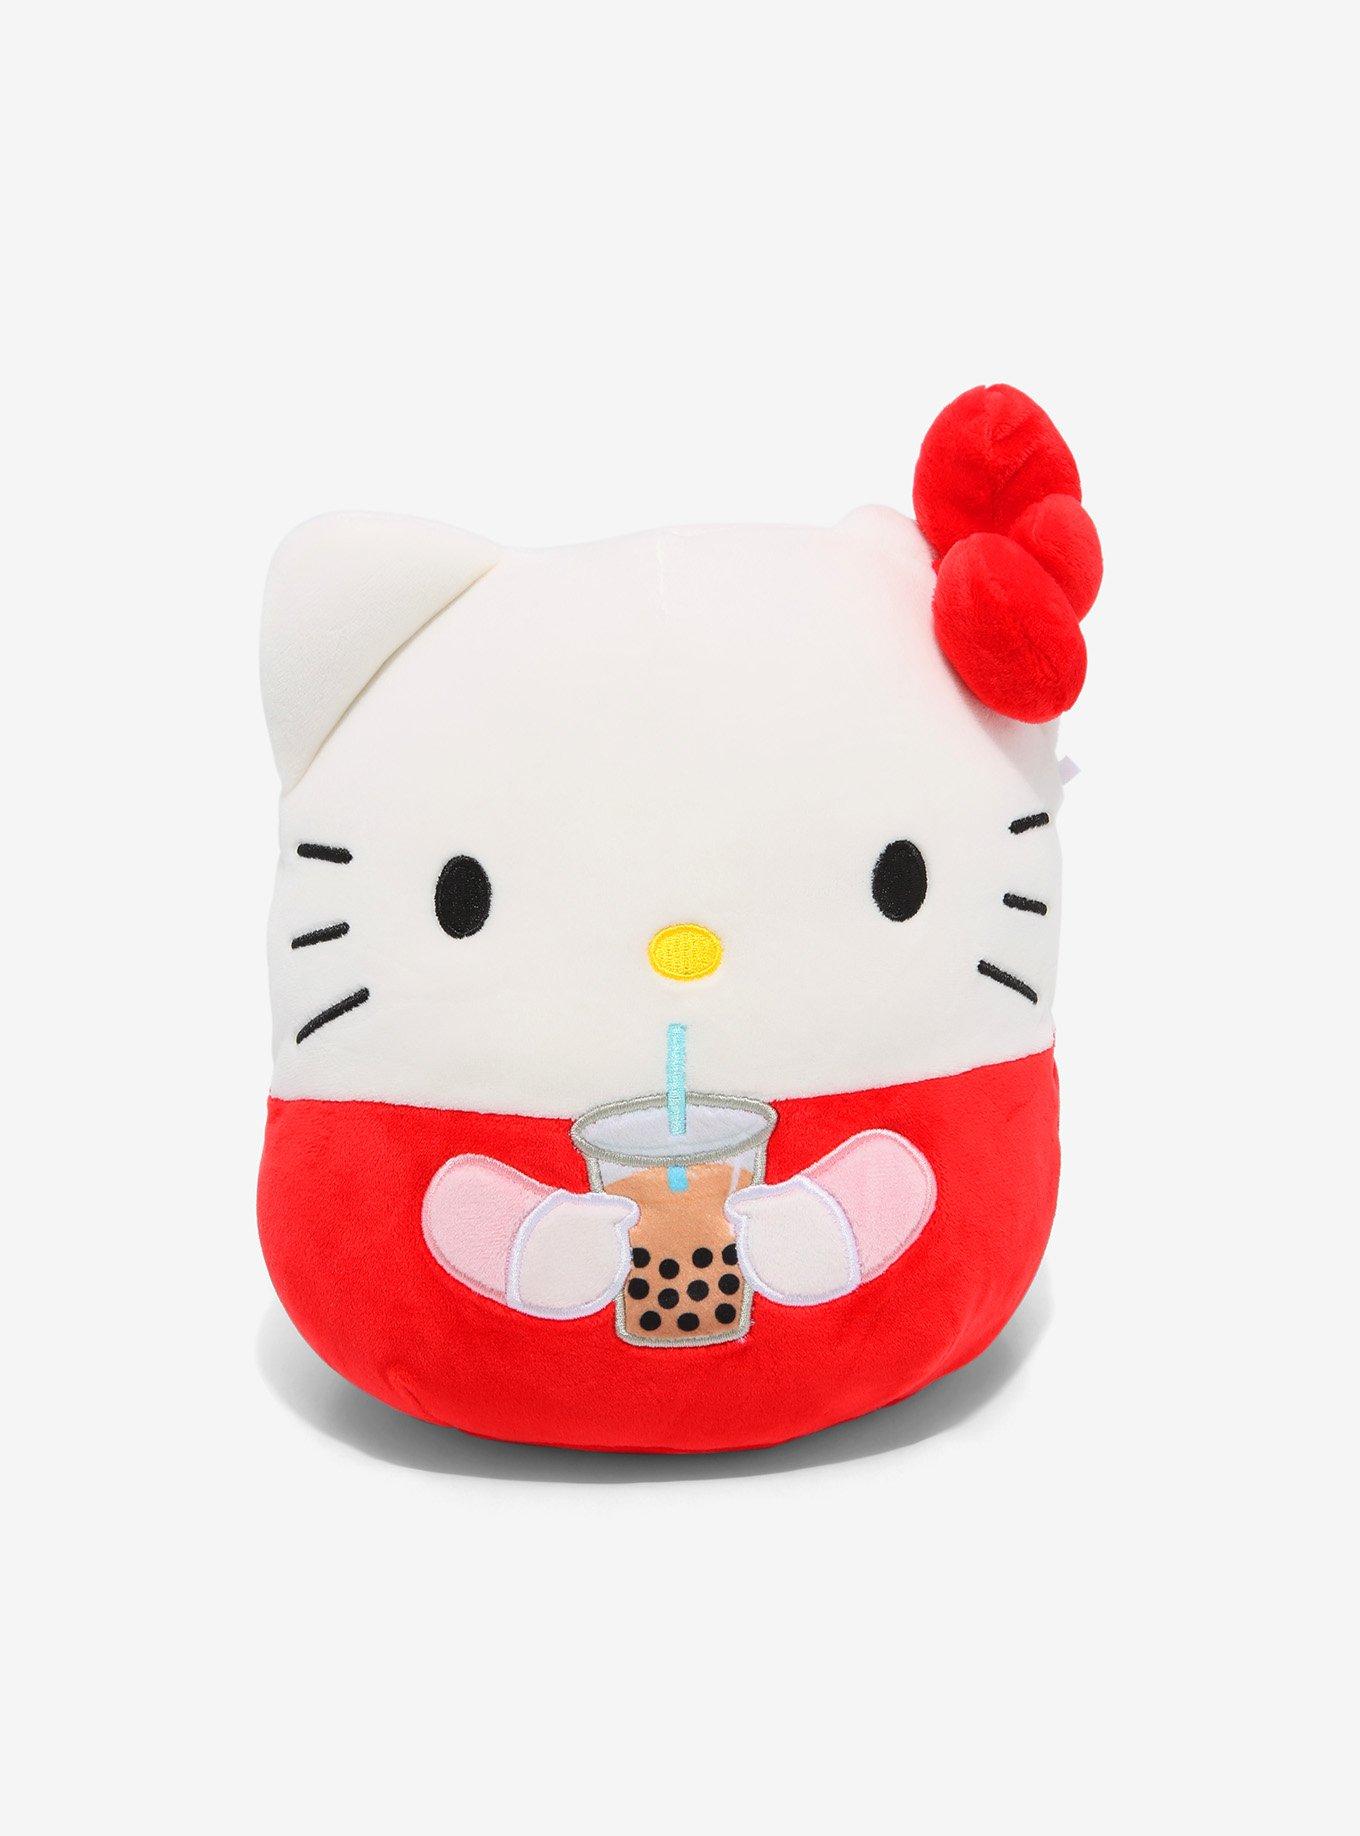 Squishmallows Sanrio 8 Hello Kitty Boba Tea Plush Toy